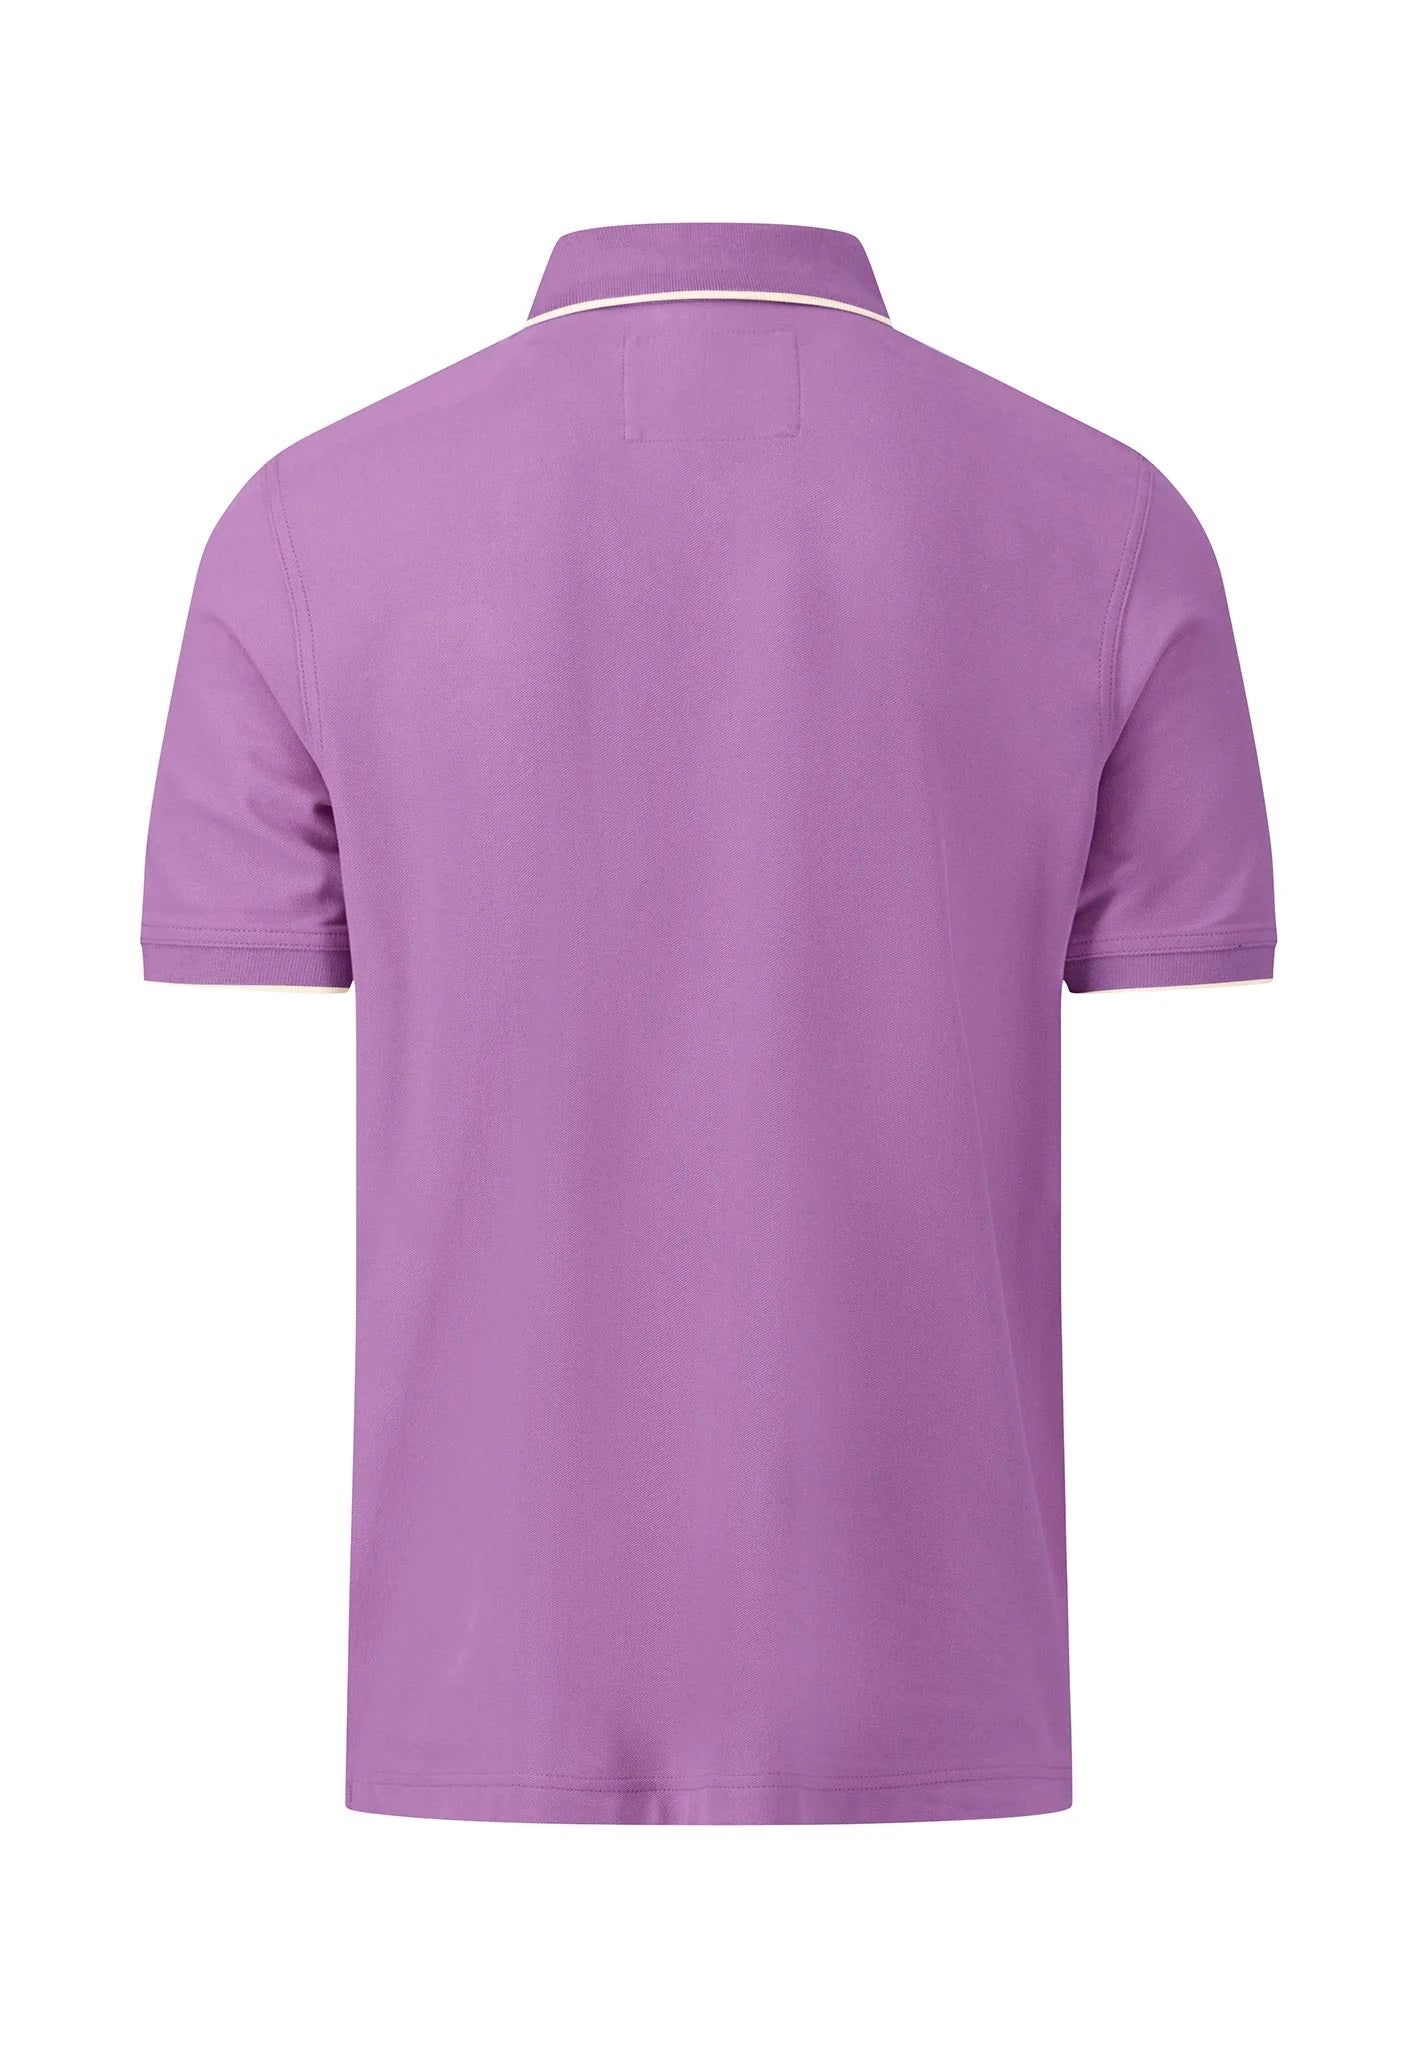 FYNCH HATTON Modern-Fit Polo Shirt - Men's Cotton Pique – Dusty Lavender